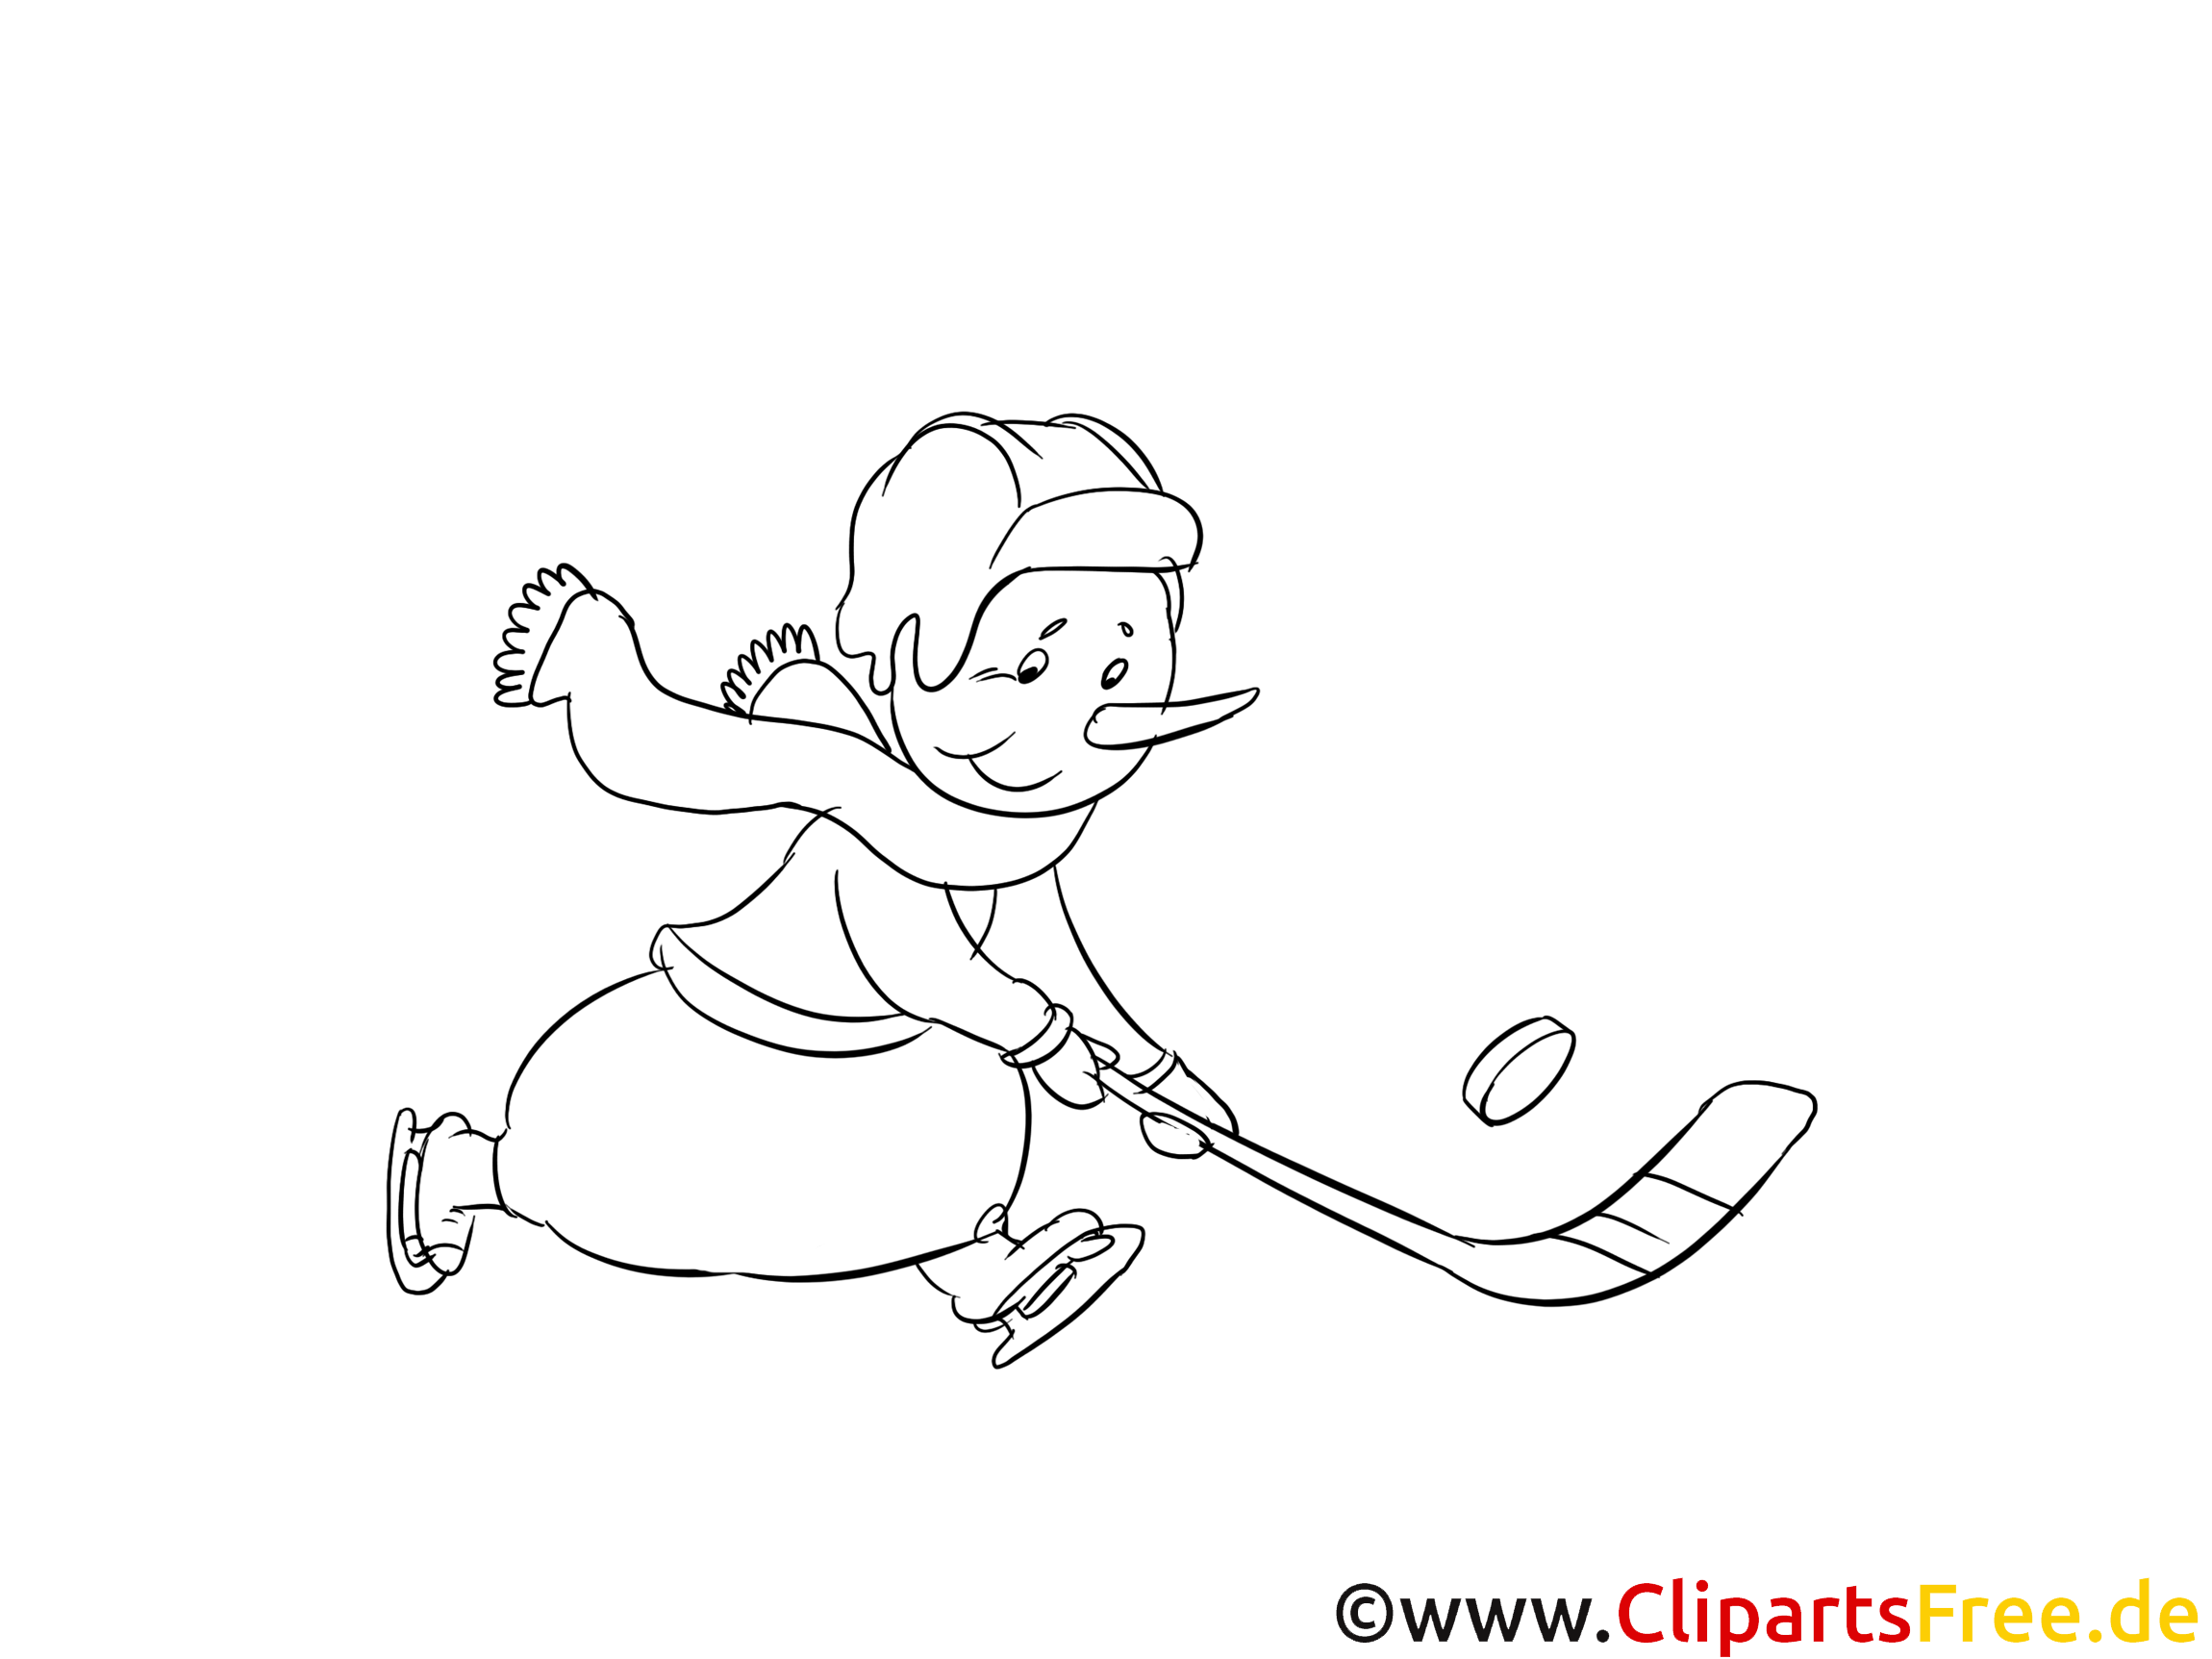 Bonhomme de neige images – Hockey gratuit à imprimer